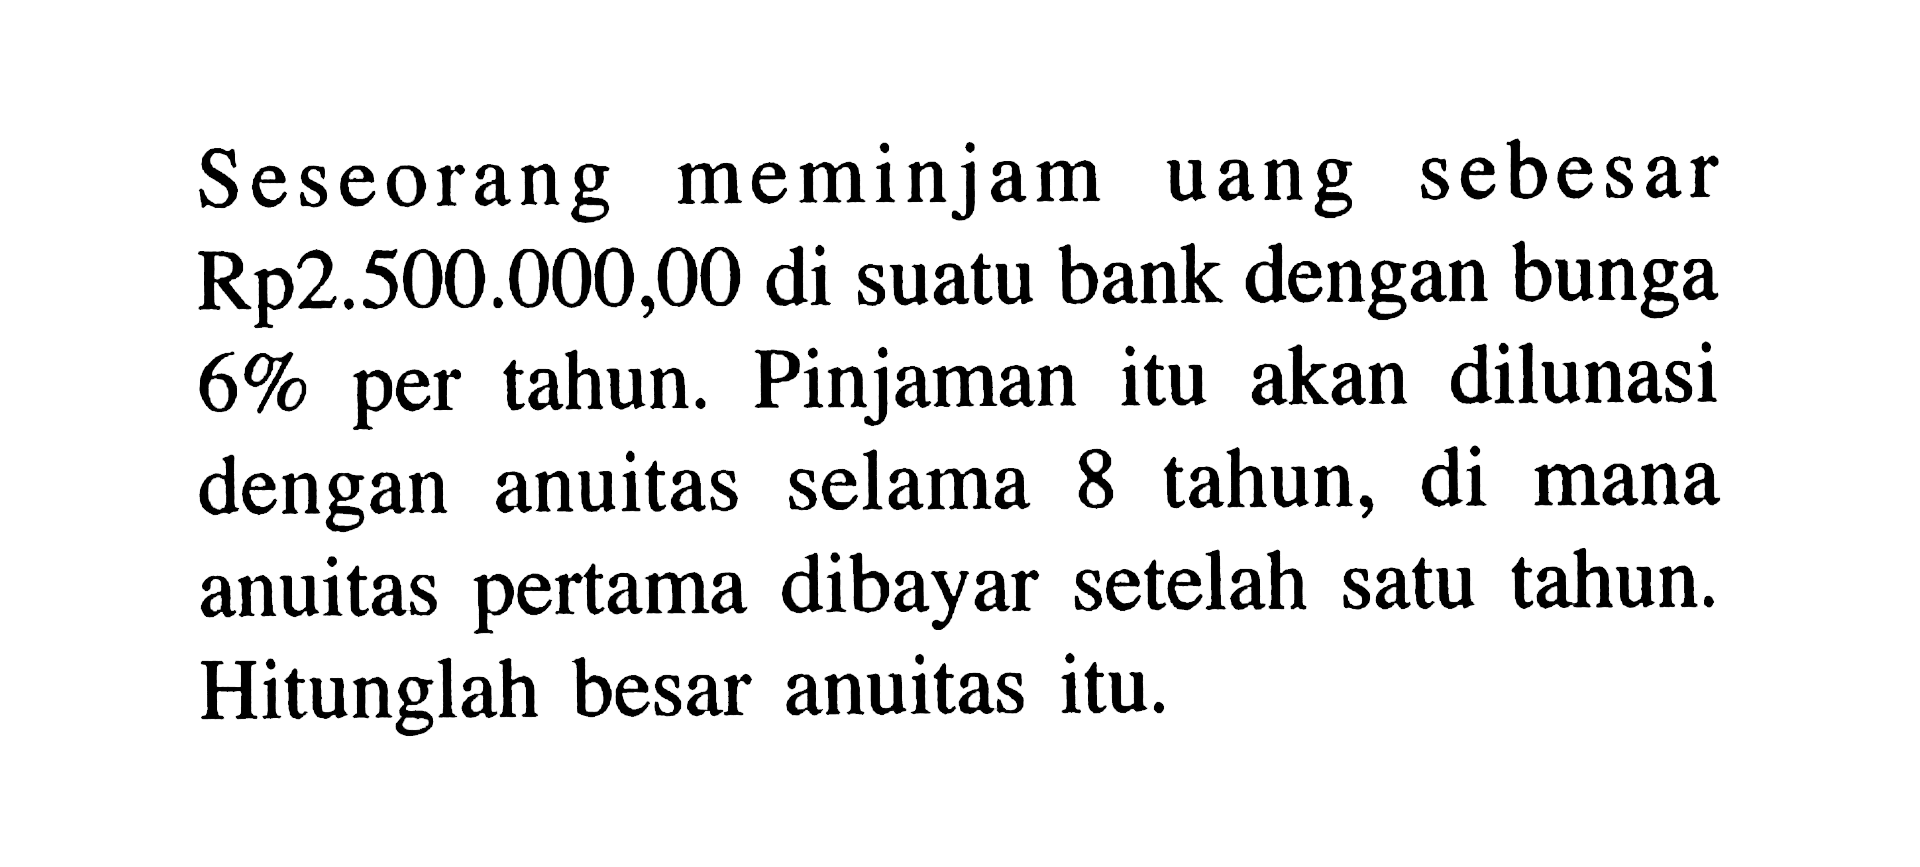 Seseorang meminjam uang sebesar Rp2.500.000,00 di suatu bank dengan bunga  6%  per tahun. Pinjaman itu akan dilunasi dengan anuitas selama 8 tahun, di mana anuitas pertama dibayar setelah satu tahun. Hitunglah besar anuitas itu.